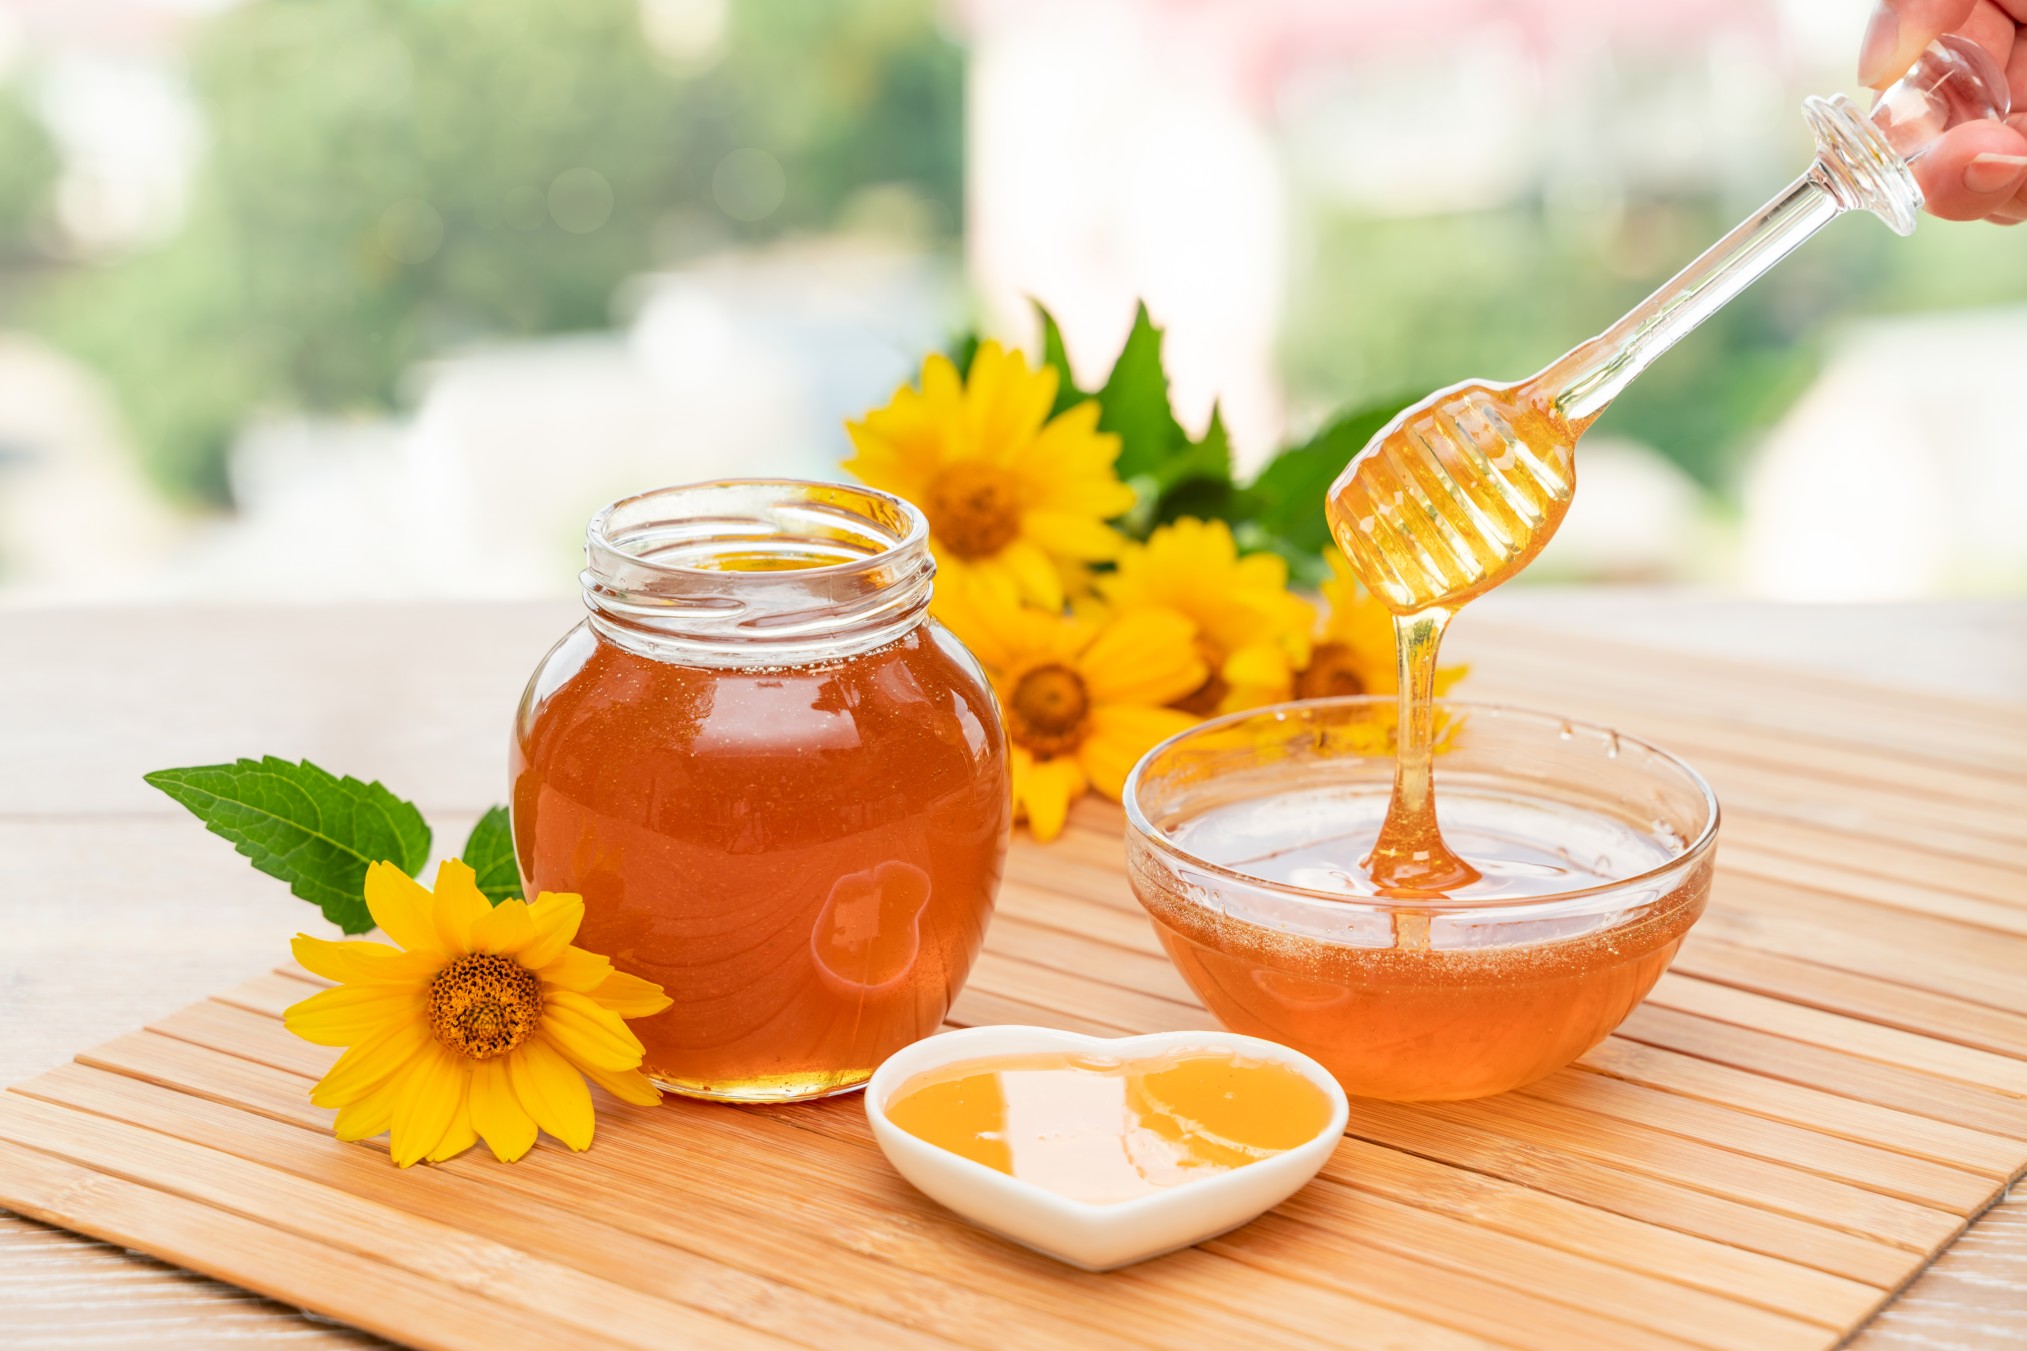 Honig gilt als sehr gesund nicht zuletzt für ältere Menschen. Foto TatianaMara via Twenty20